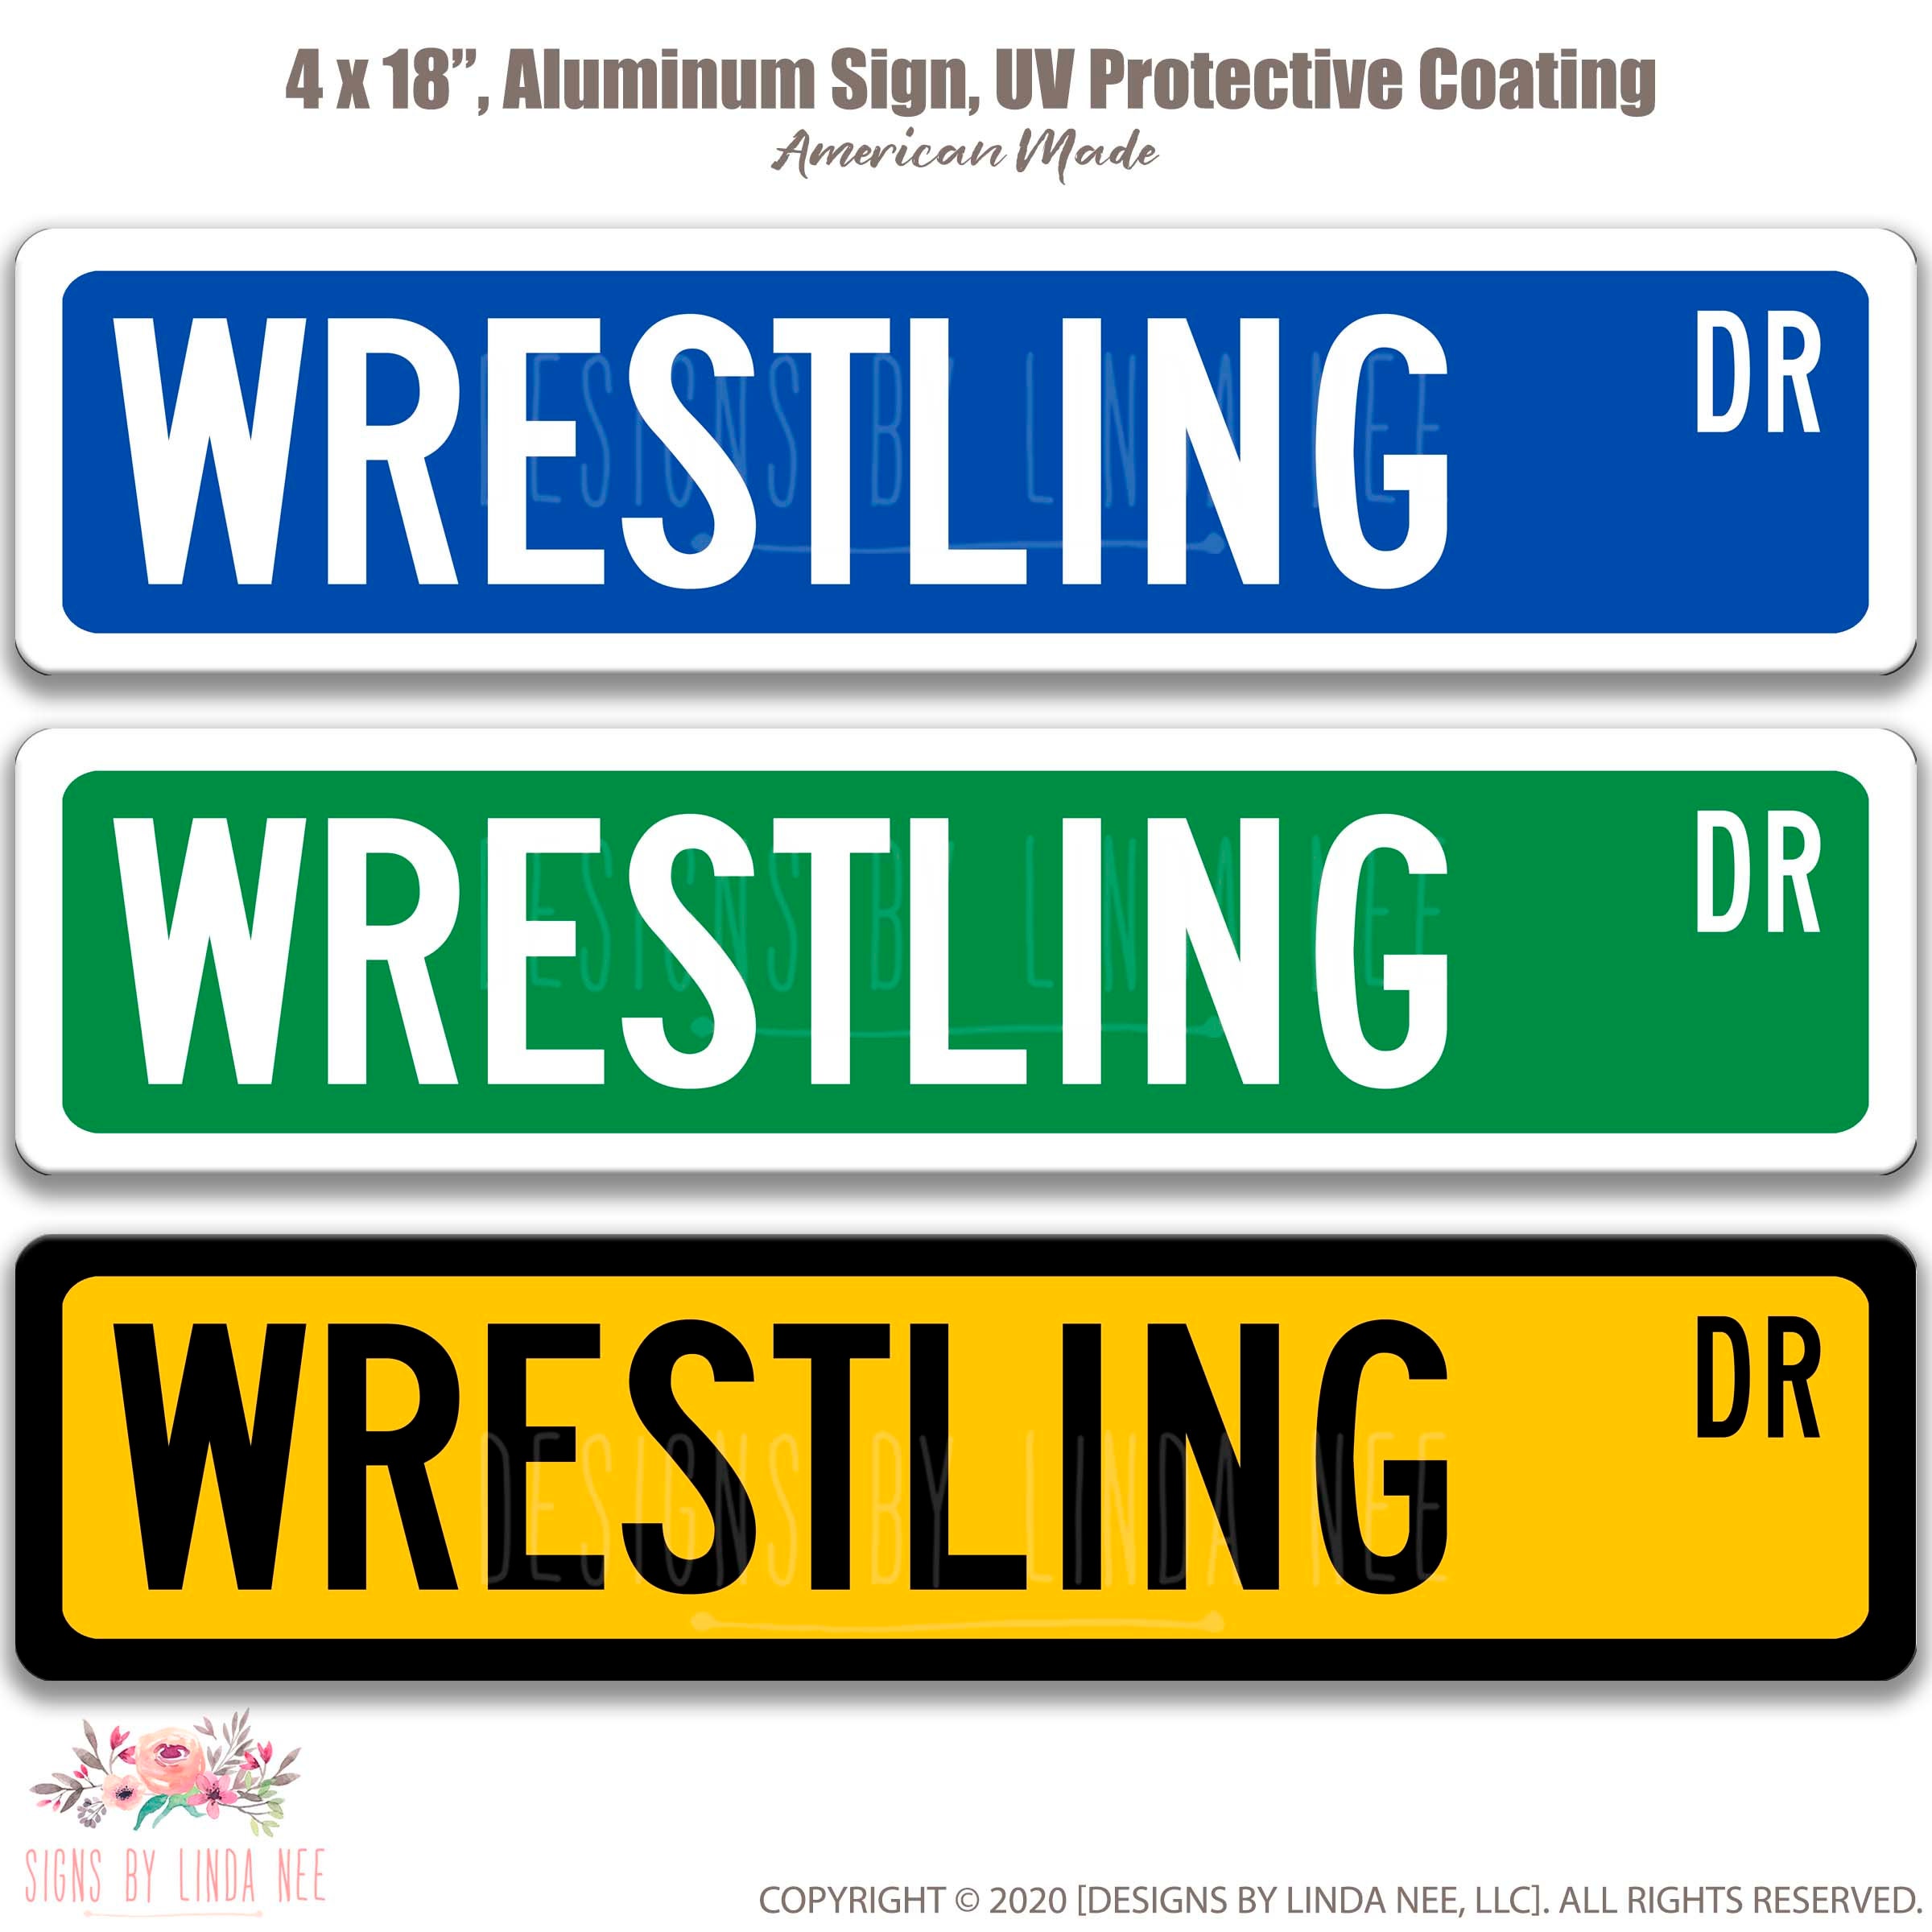 Wrestling Car Decals / Custom Wrestling Magnet / Wrestling Stickers /  Wrestling Yard Signs / Wrestling YETI Decal / Wrestling Locker Magnets 